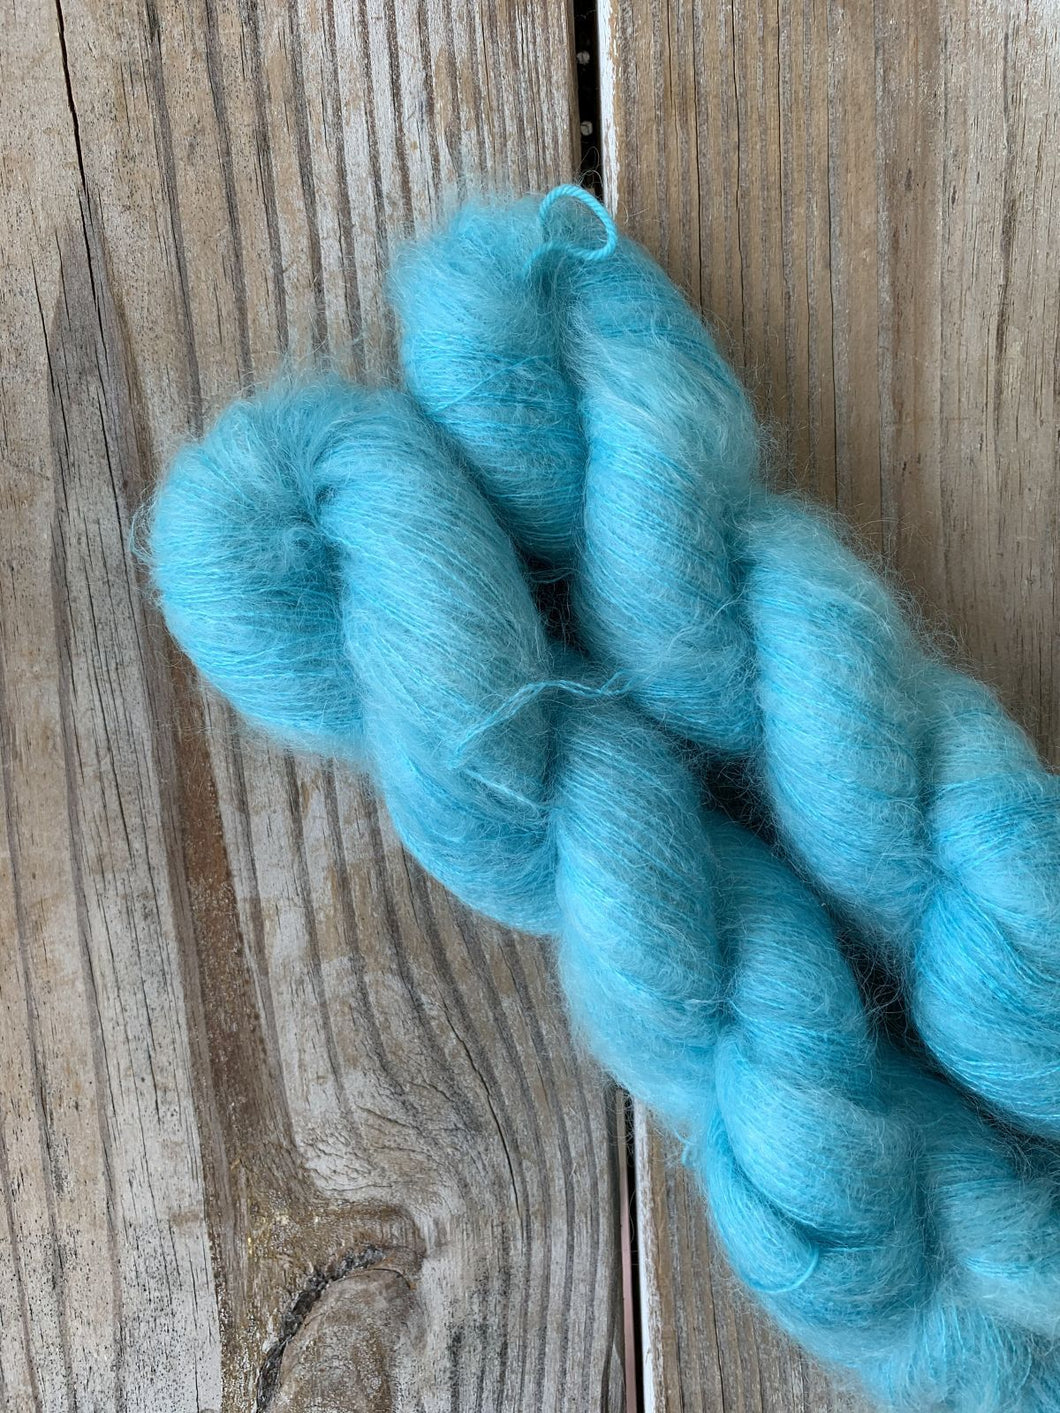 Wool & Vinyl Mohair Yarn - Crystal Blue Persuasion